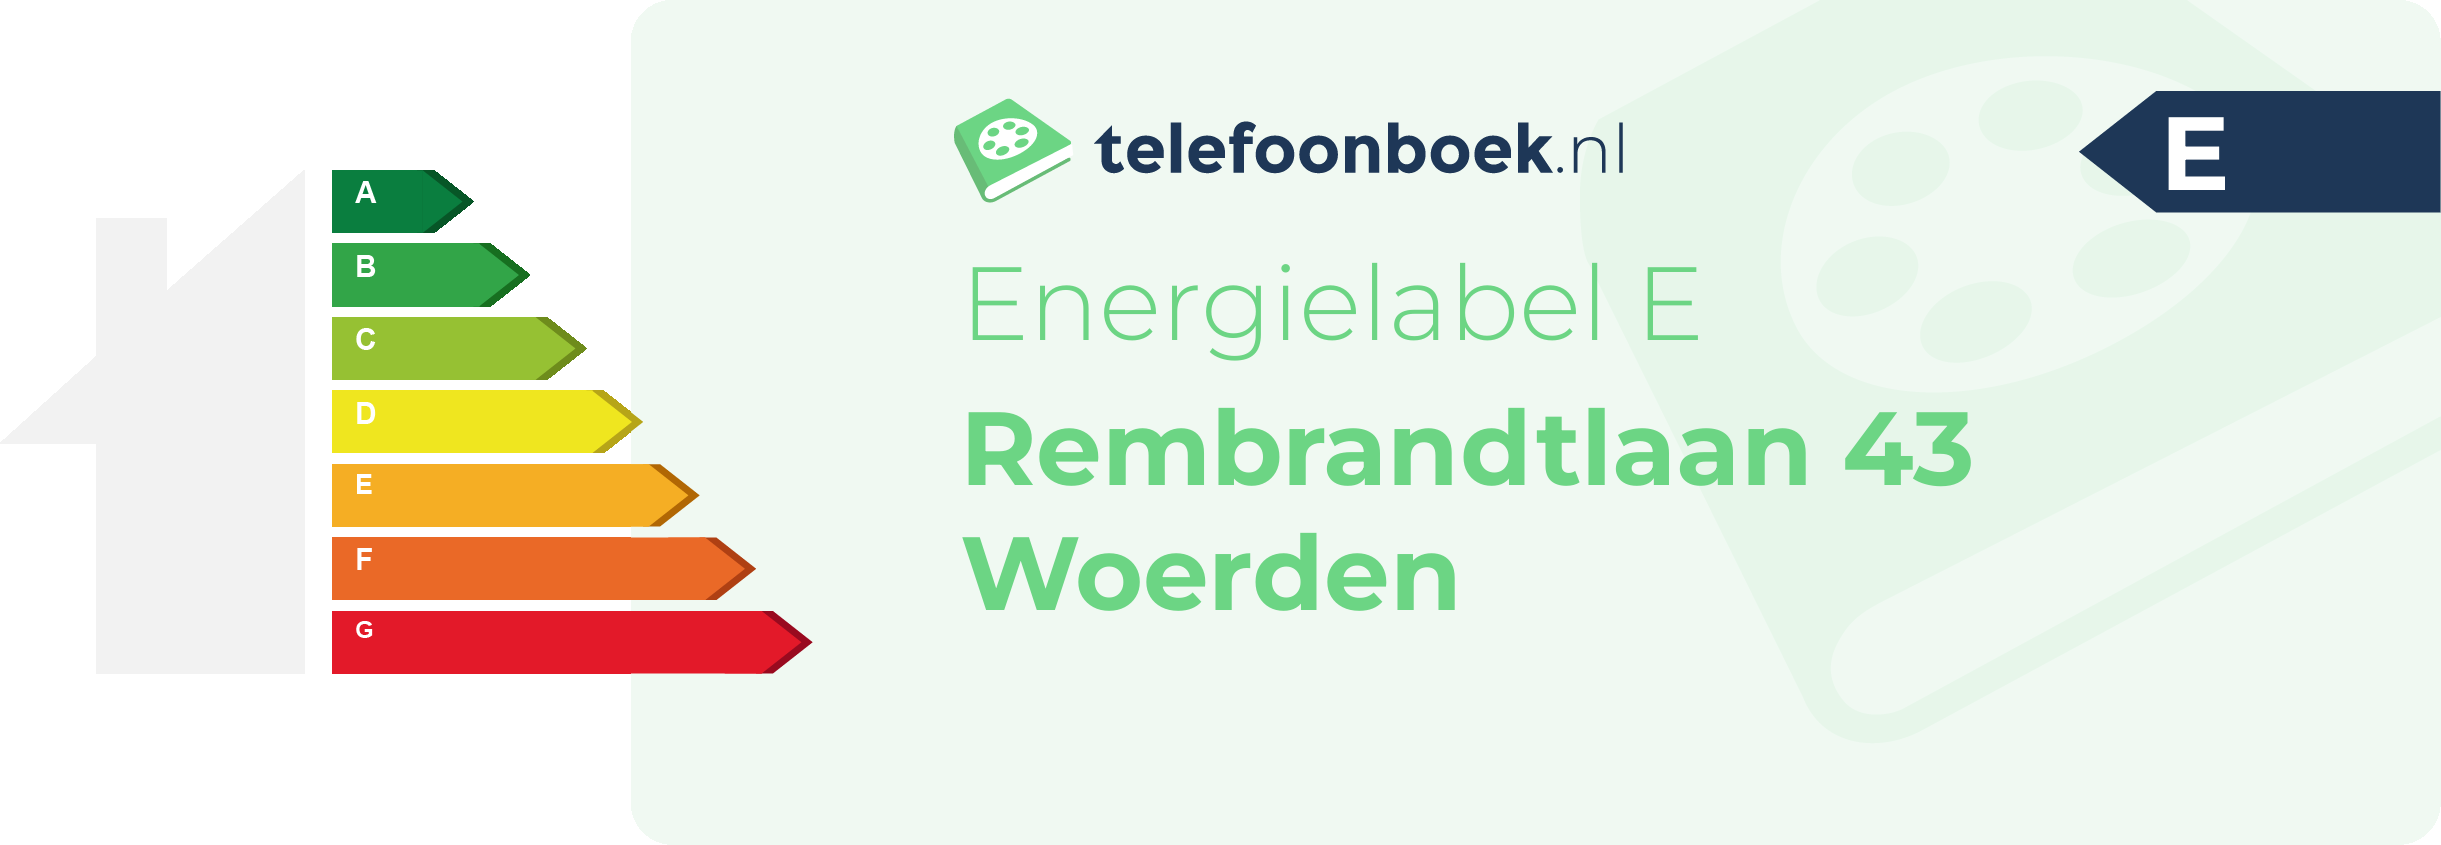 Energielabel Rembrandtlaan 43 Woerden